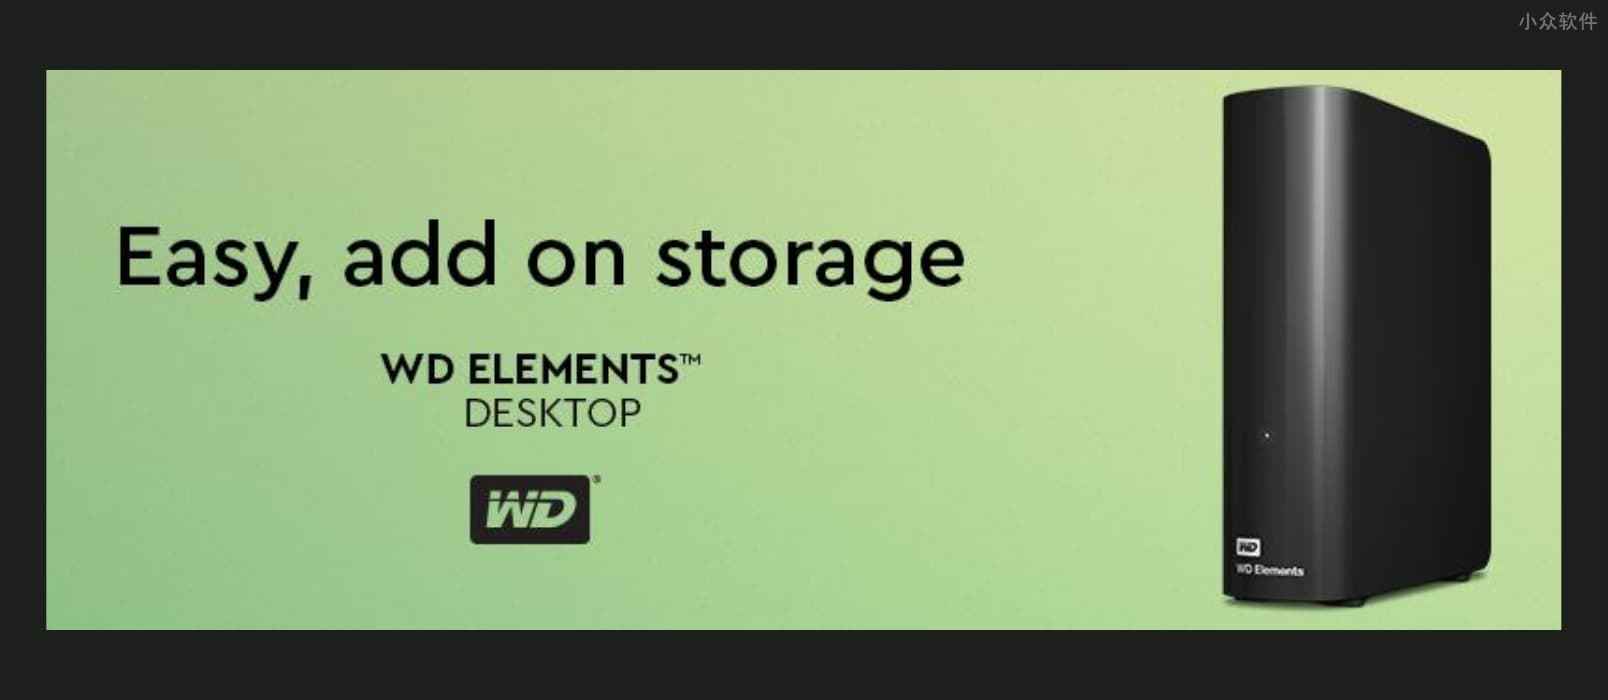 亚马逊镇店之宝：Western Digital 12TB Elements 外置硬盘 特价又来了 1